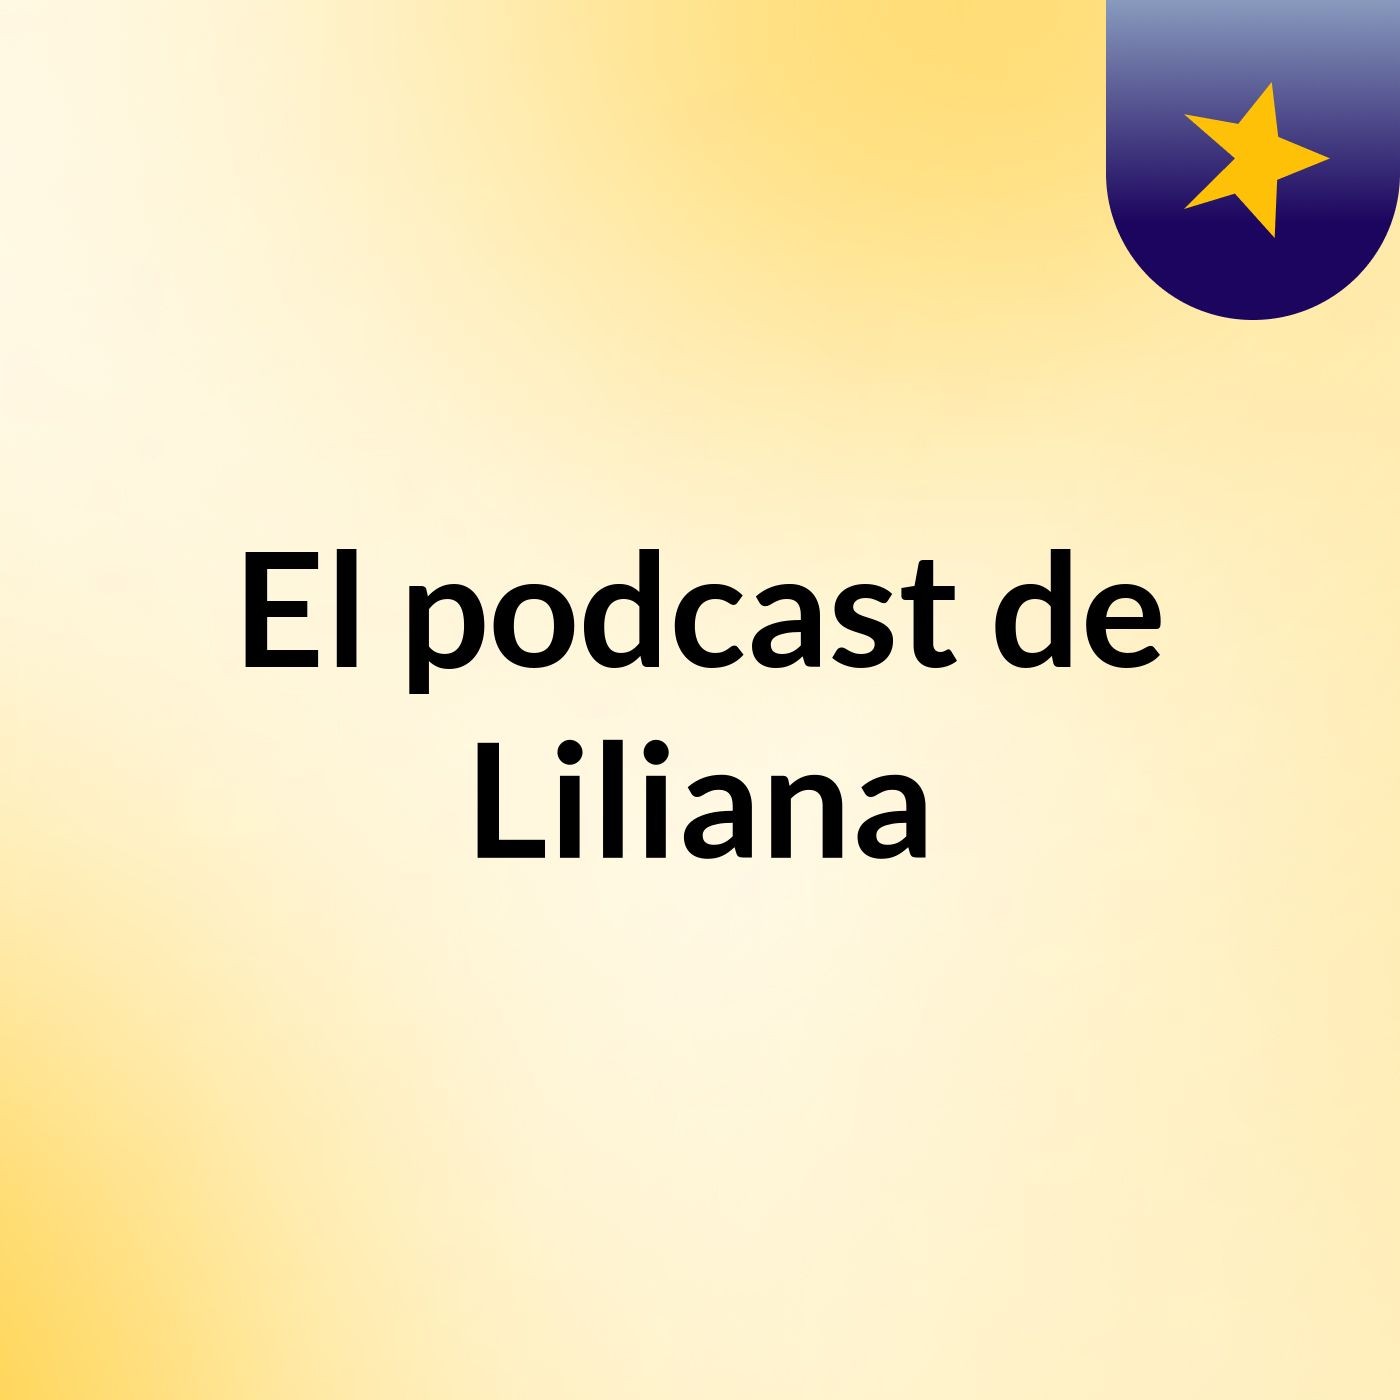 El podcast de Liliana